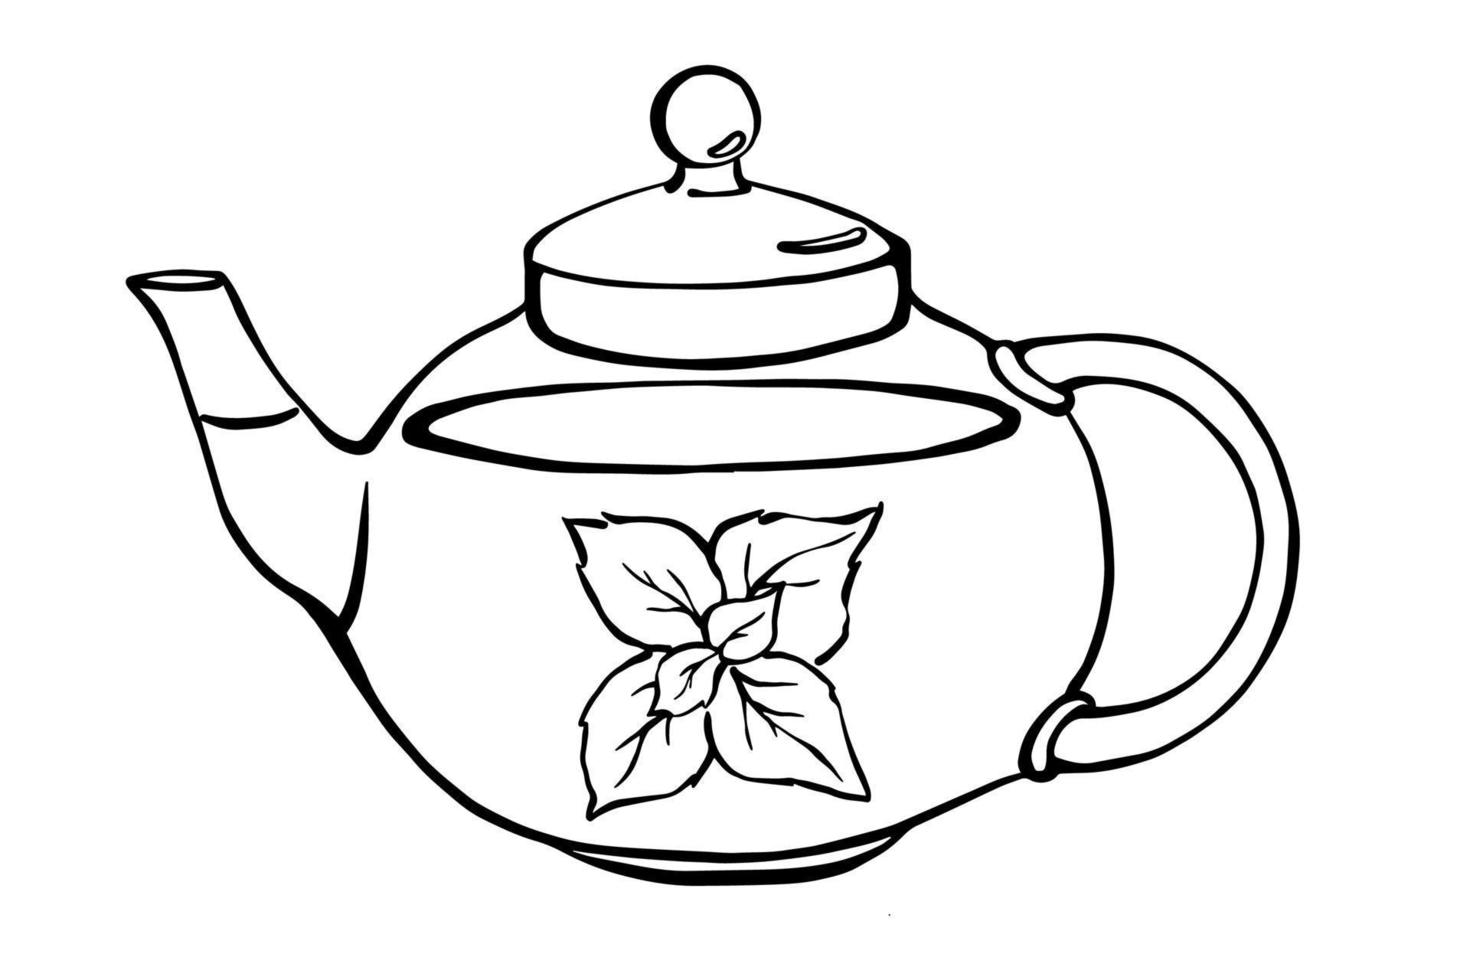 tetera de vidrio dibujada a mano con té de menta. ilustración de contorno en blanco y negro de té de hierbas con menta. elemento de diseño de menú de cafetería. vector